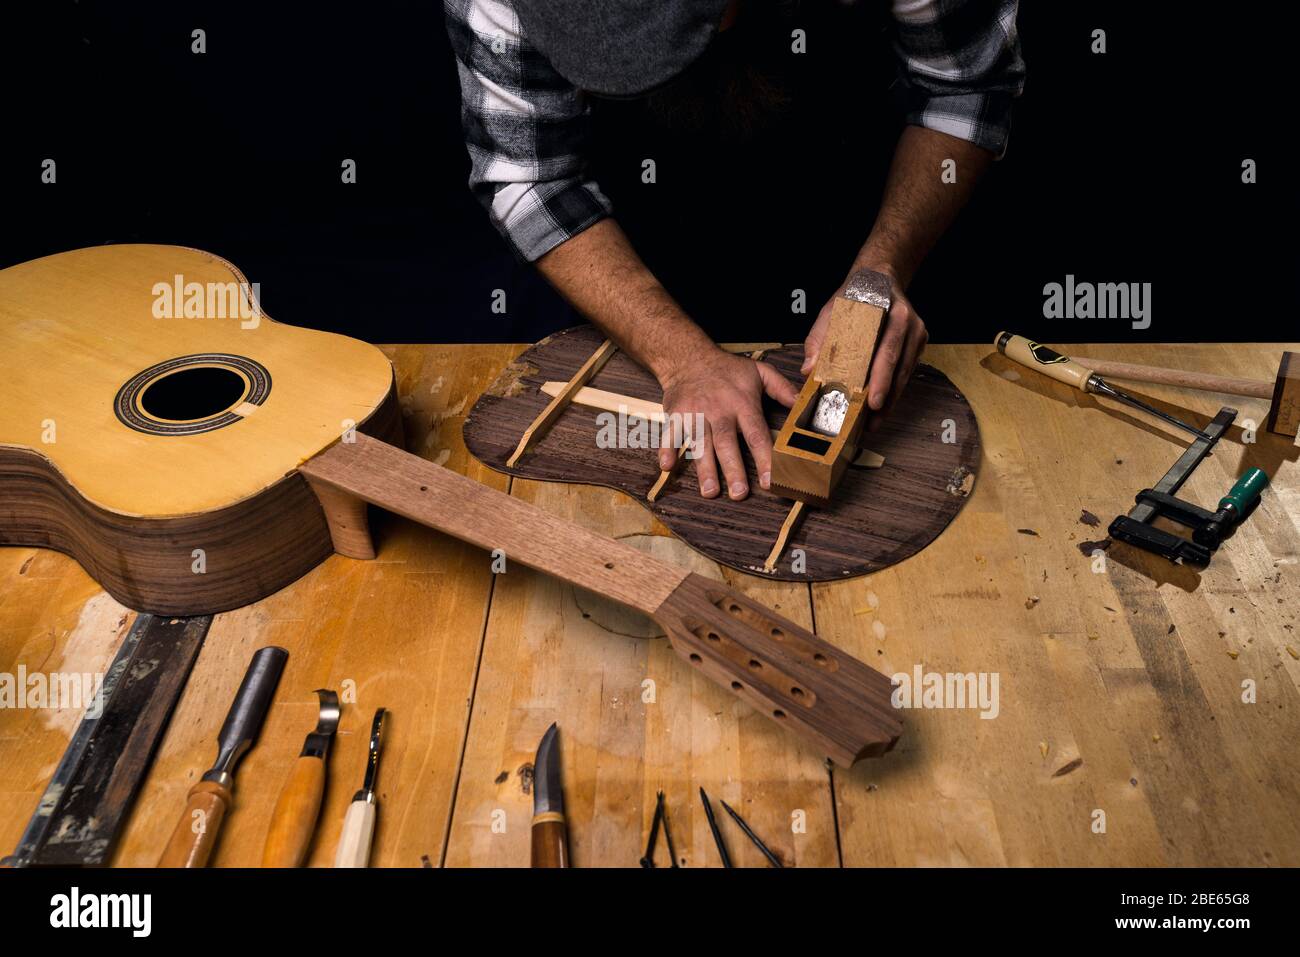 Mann trägt Mütze und kariertes Hemd, das Gitarre macht. Planen Gitarre zurück. Werkstatt von Luthier. Dunkelschwarzer Hintergrund. Stockfoto